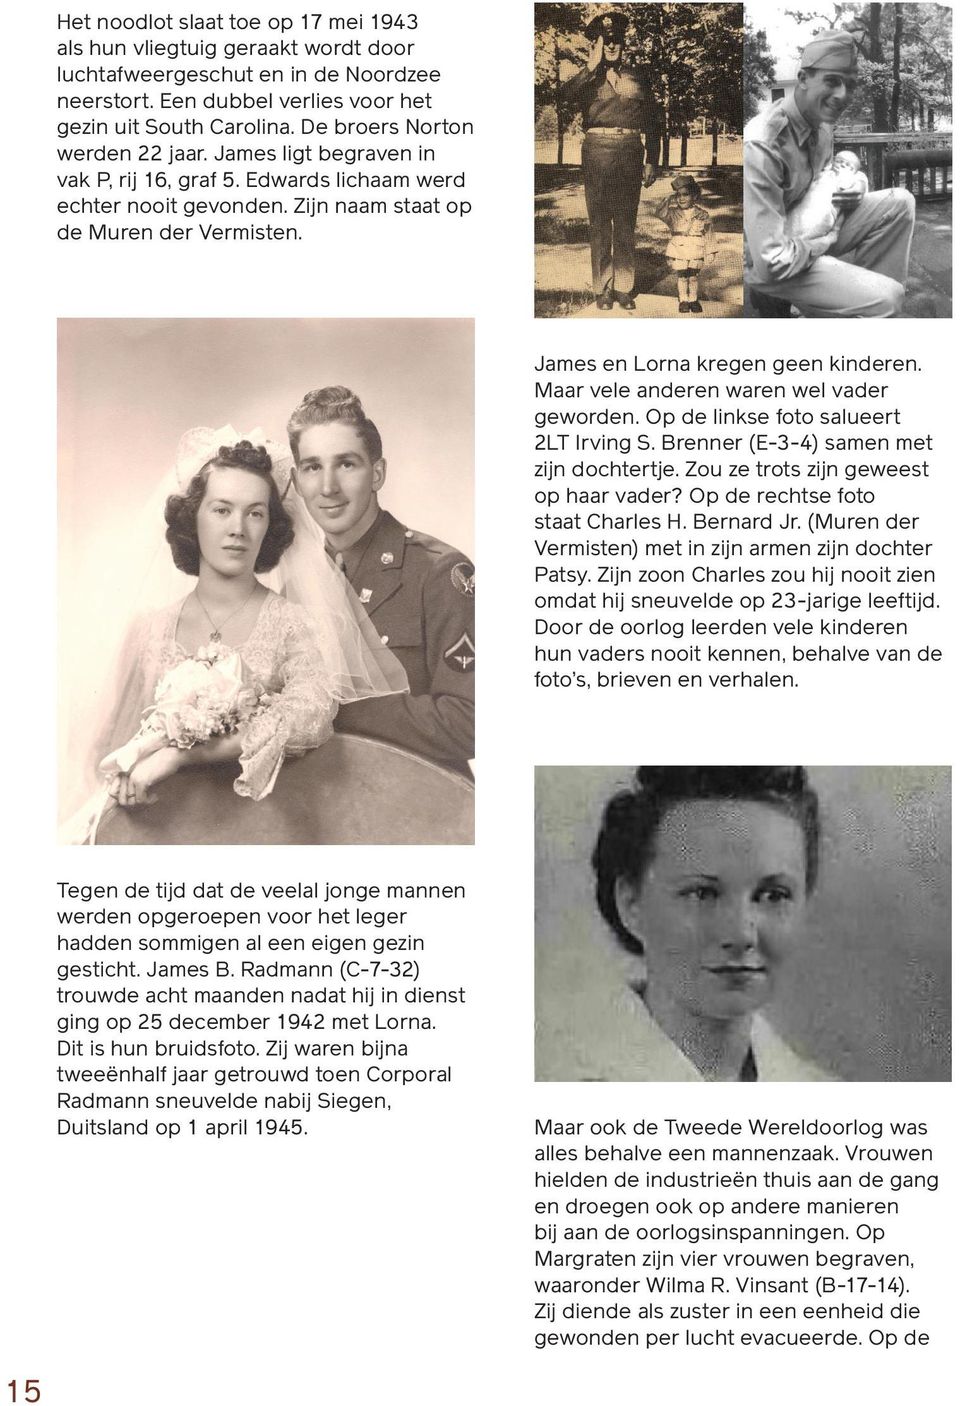 James en Lorna kregen geen kinderen. Maar vele anderen waren wel vader geworden. Op de linkse foto salueert 2LT Irving S. Brenner (E-3-4) samen met zijn dochtertje.